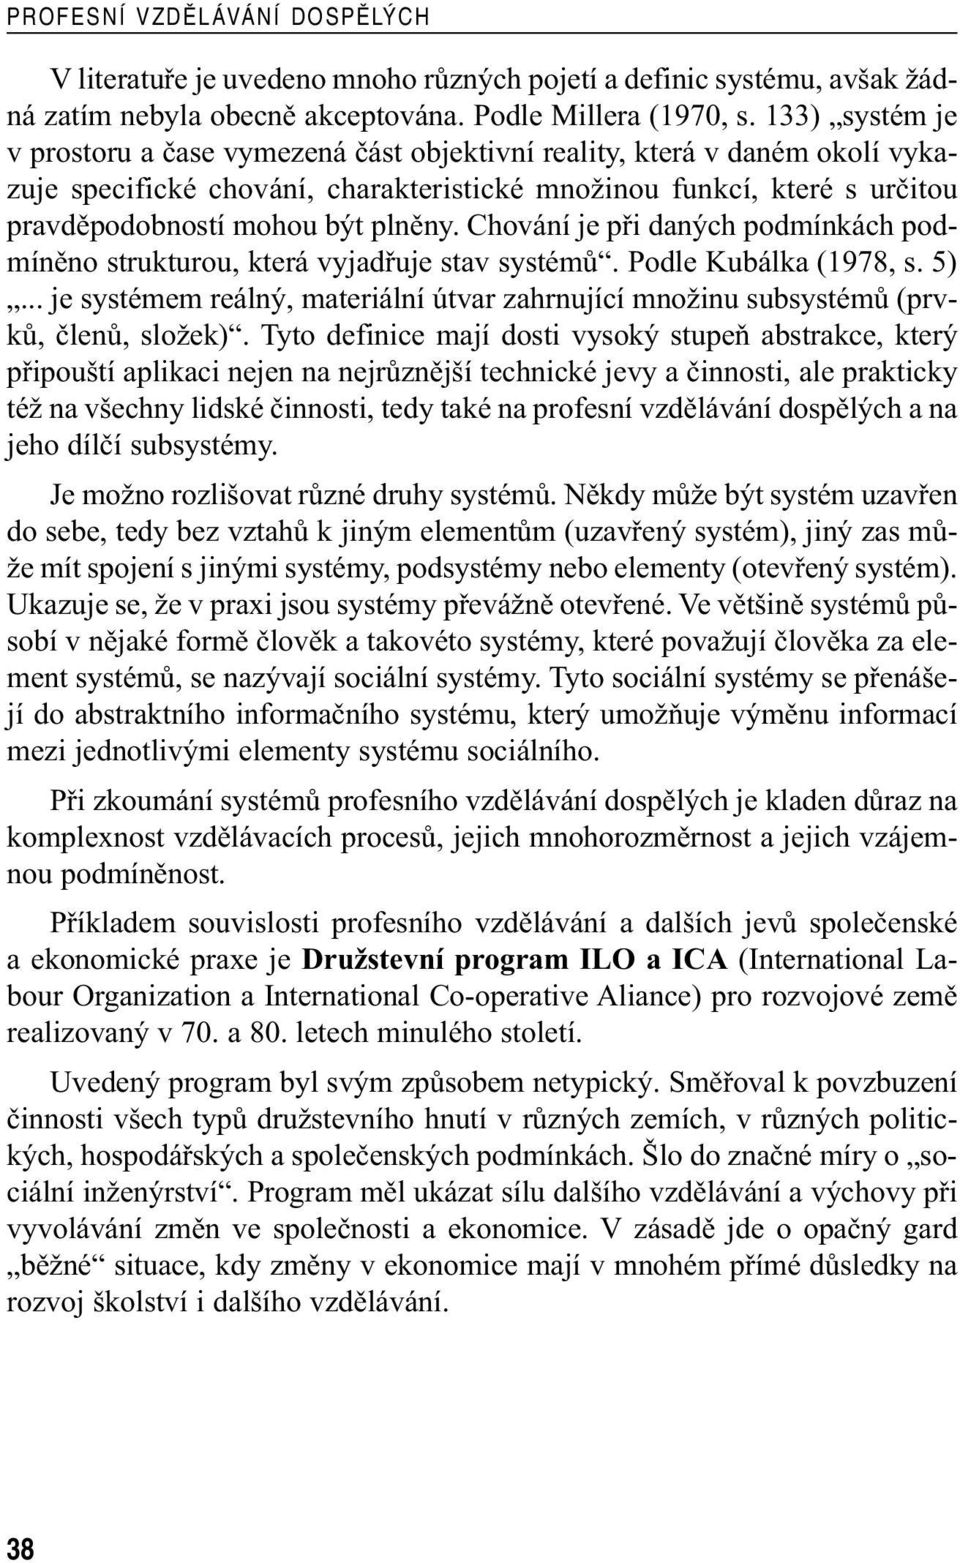 Chování je při daných podmínkách podmíněno strukturou, která vyjadřuje stav systémů. Podle Kubálka (1978, s. 5).